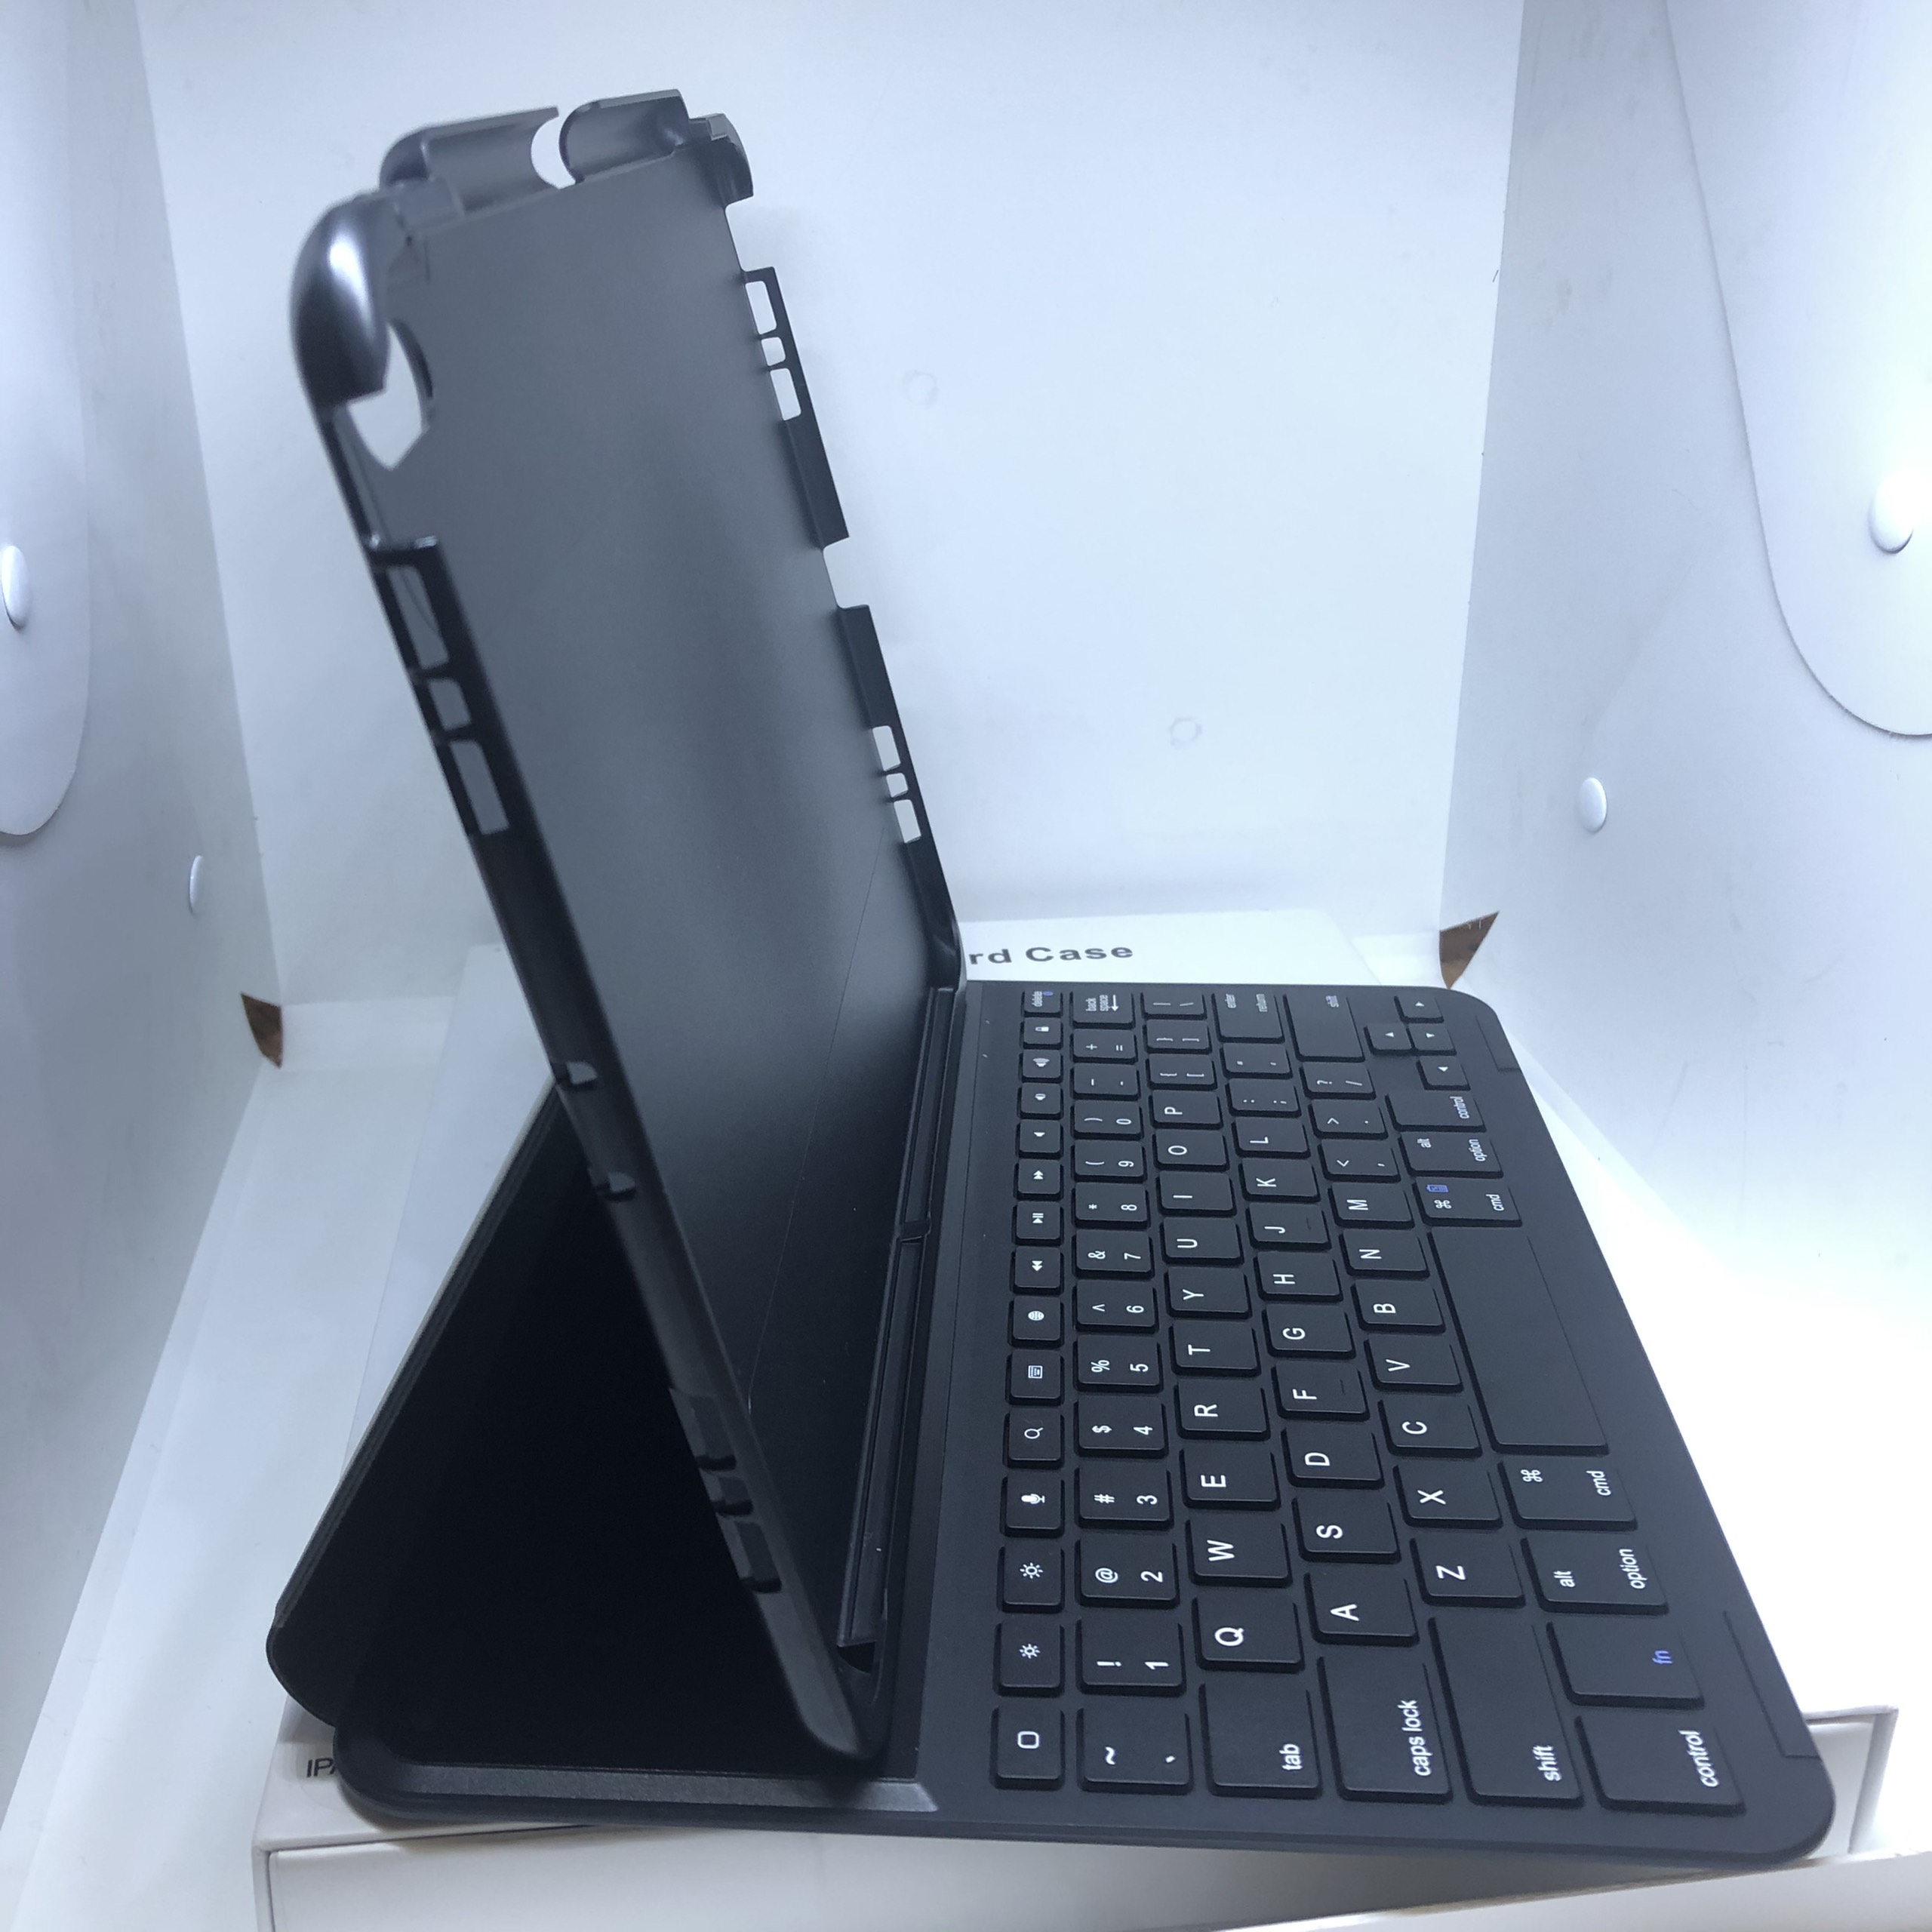 Bao da bàn phím Dux Ducis cho iPad Pro 11inch (2018) - Đen - Có khay để bút siêu tiện lợi - Bao da kiêm bàn phím cho iPad Pro 11 (2018) - Hàng nhập khẩu